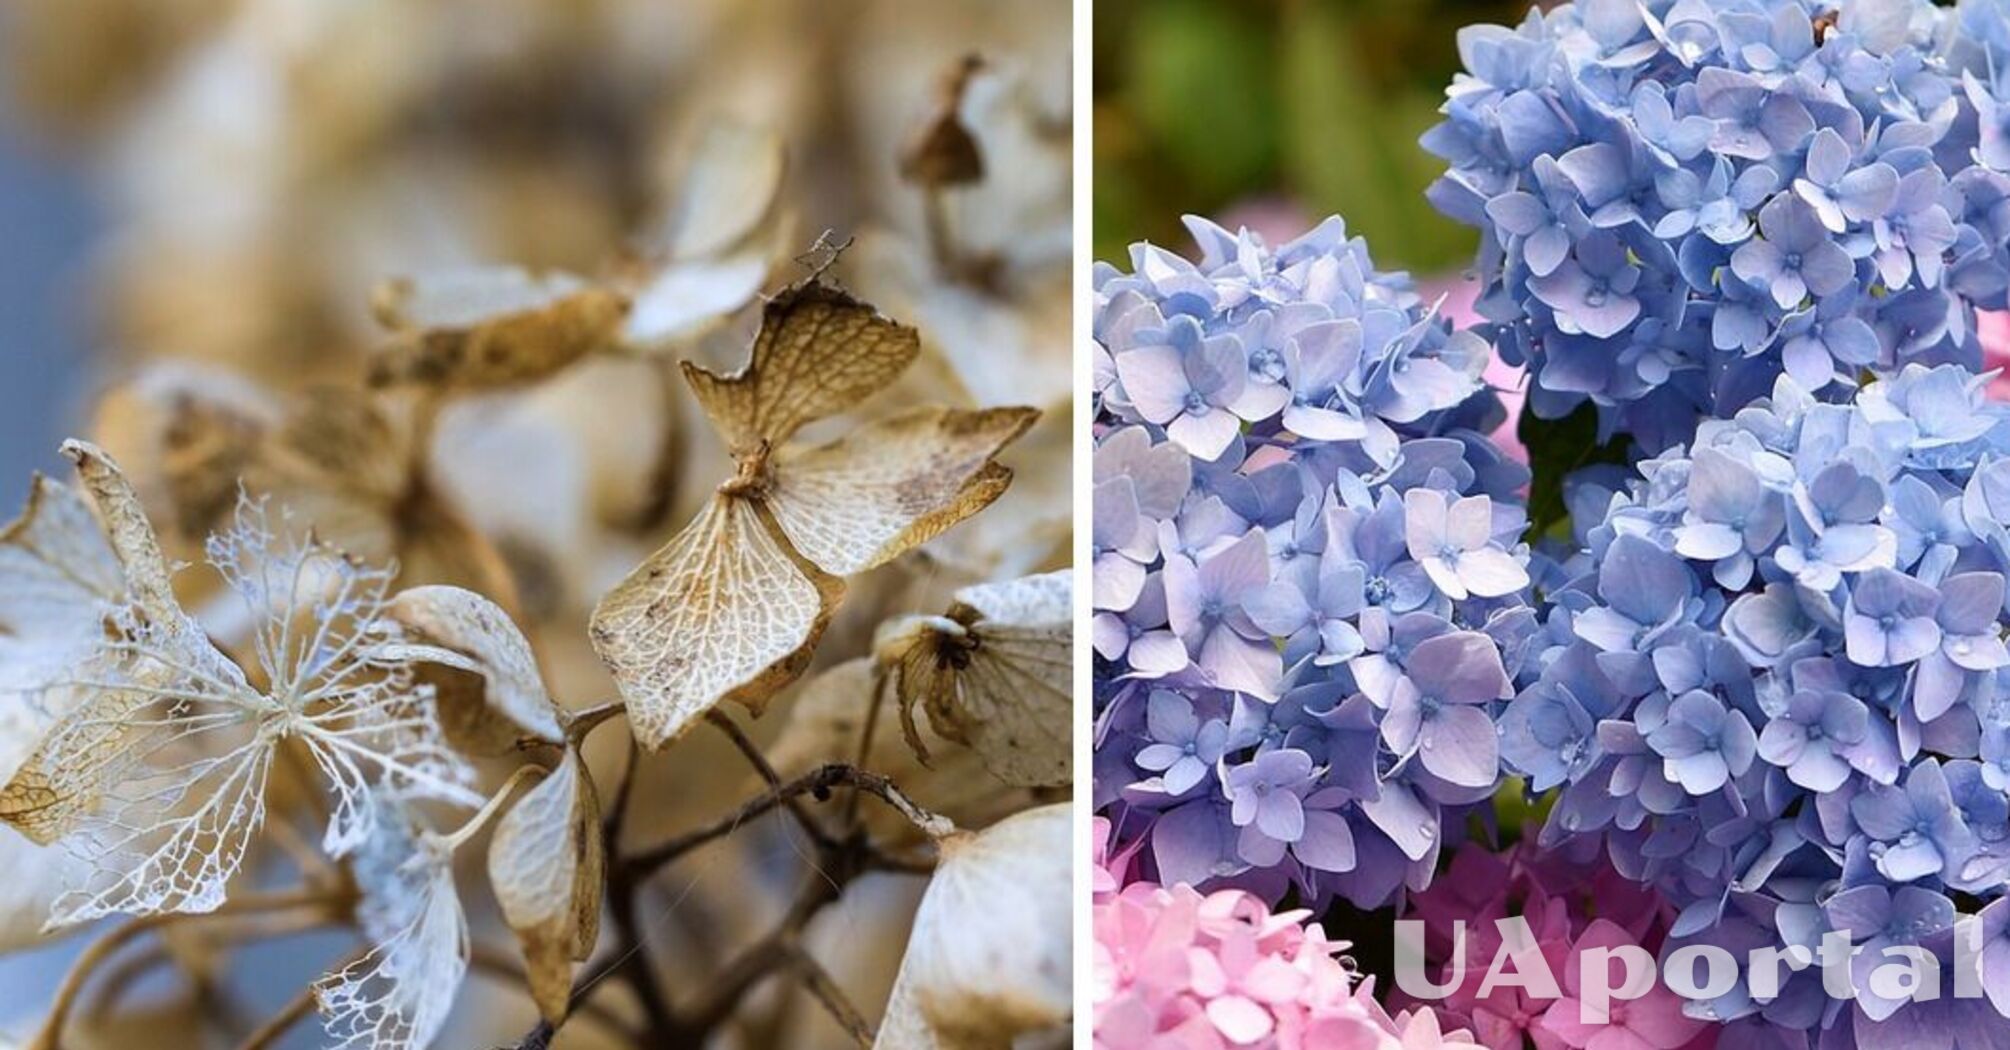 Прості поради з догляду за гортензією взимку забезпечать гарне цвітіння